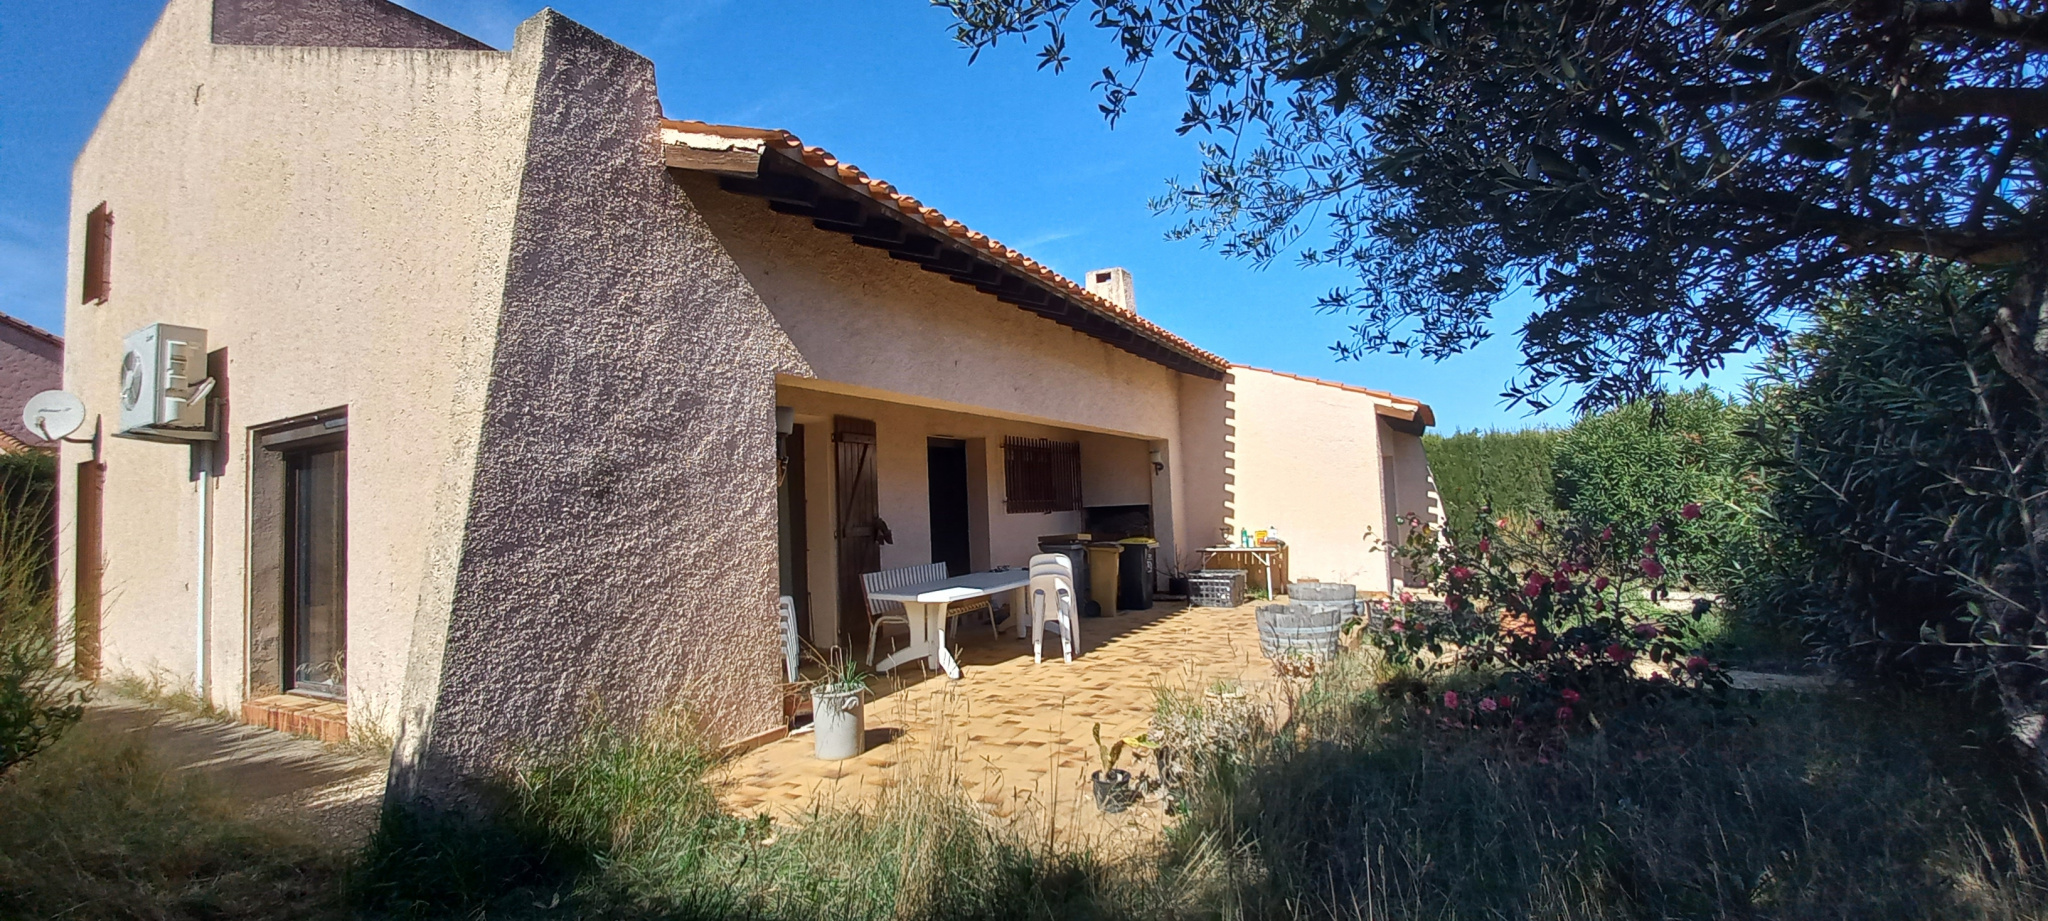 À vendre maison/villa de 140m2 à argelès-sur-mer (66700) - Photo 0'